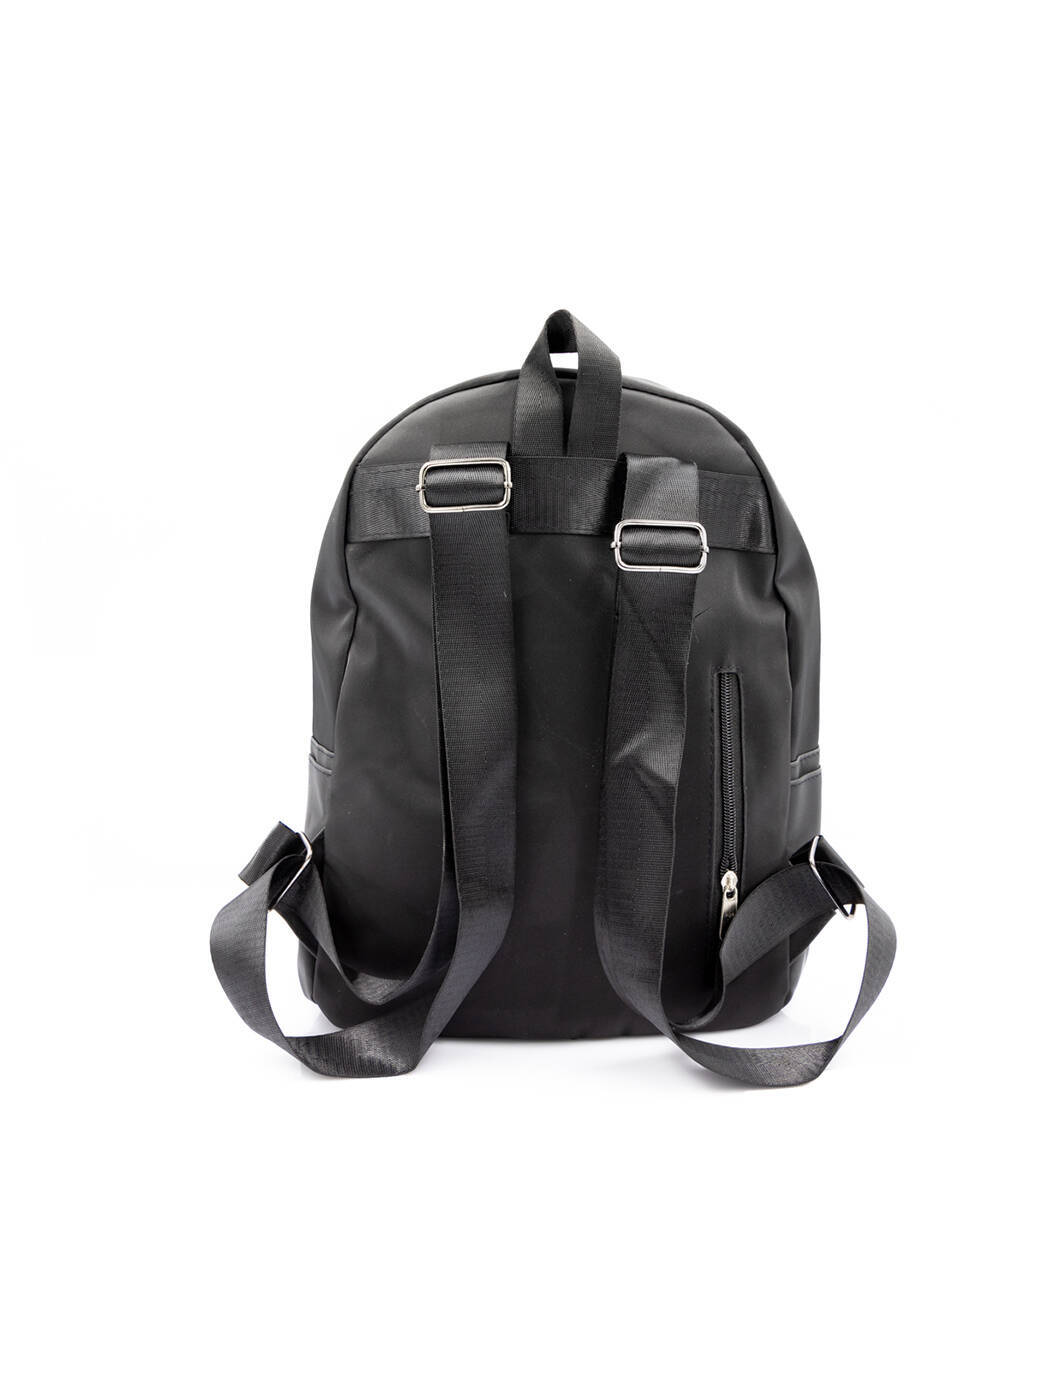 Рюкзак спортивный черный 305-4-black_M вид 1